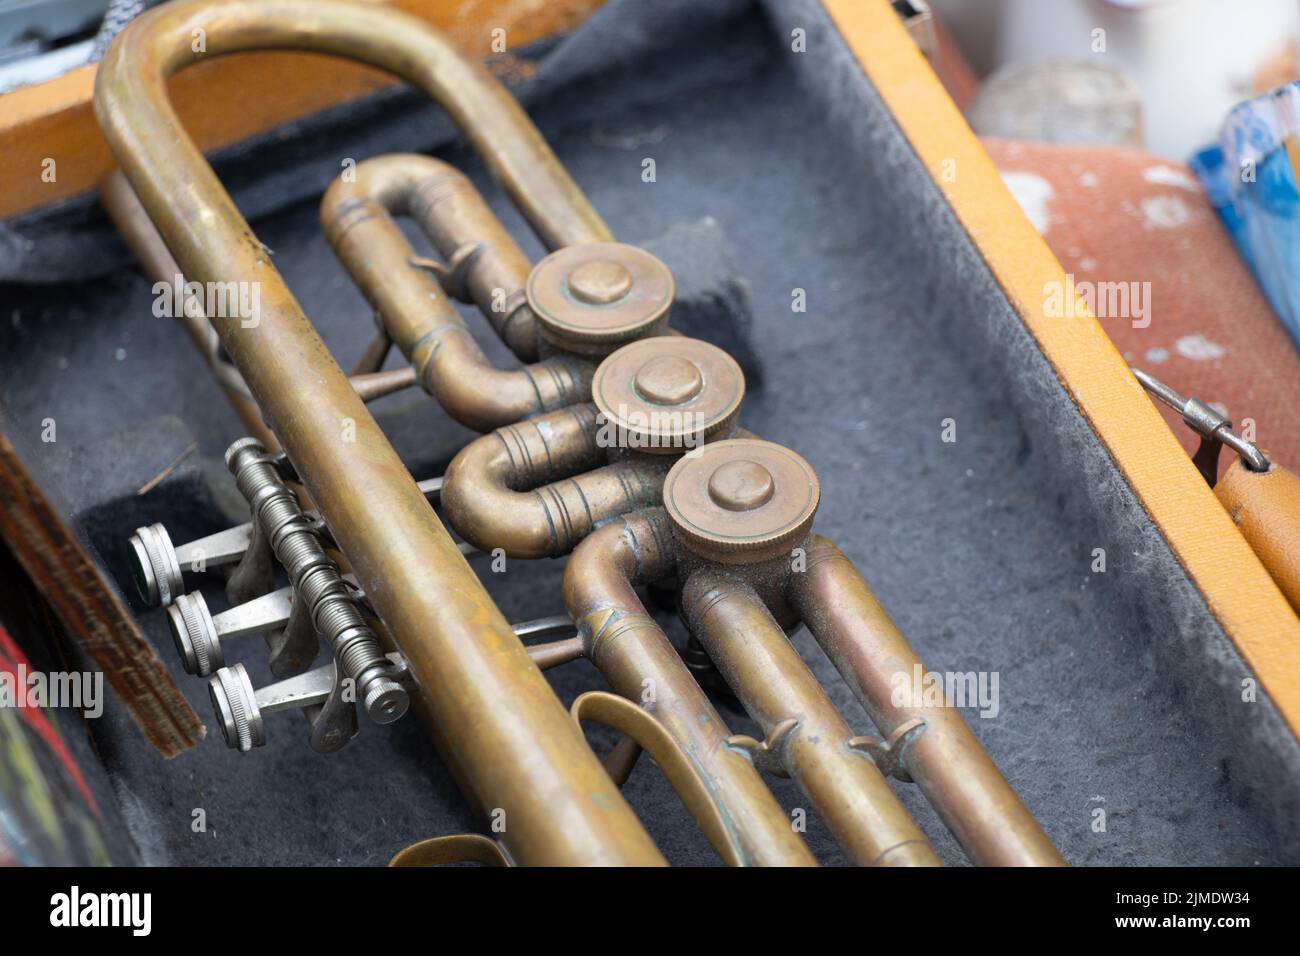 Vieja trompeta musical en una caja de madera de cerca, música y hobby Foto de stock